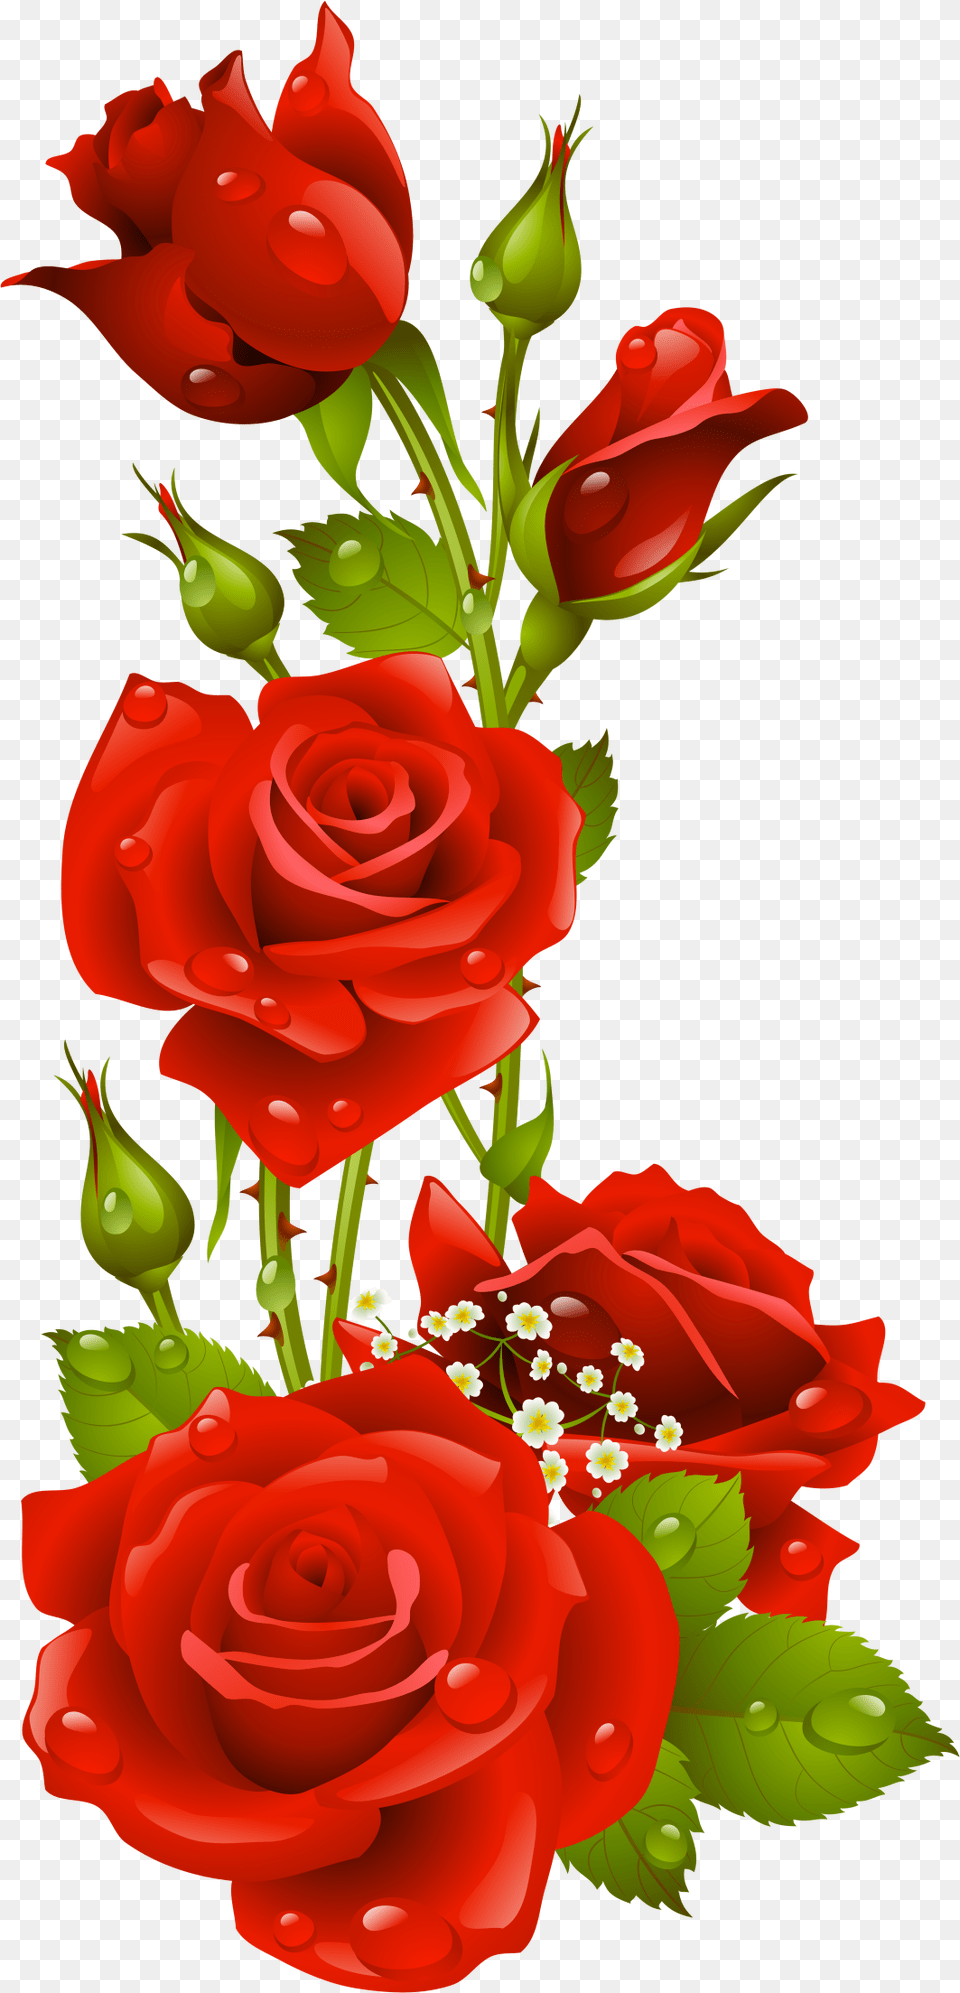 Papel De Carta Em Rosas Vermelhas, Flower, Flower Arrangement, Flower Bouquet, Plant Free Png